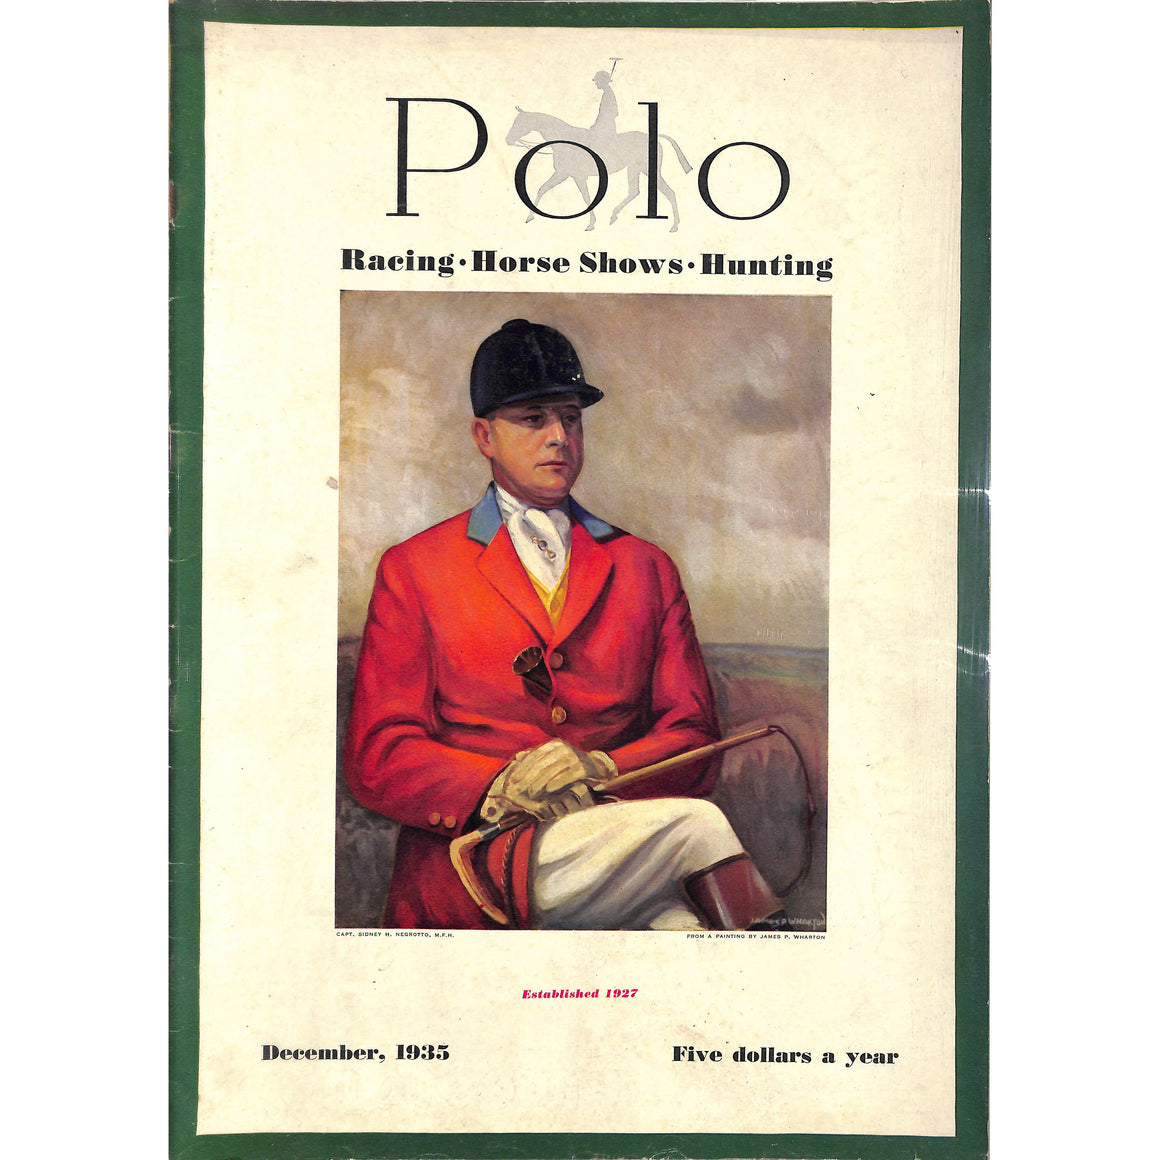 "Polo Magazine December, 1935"